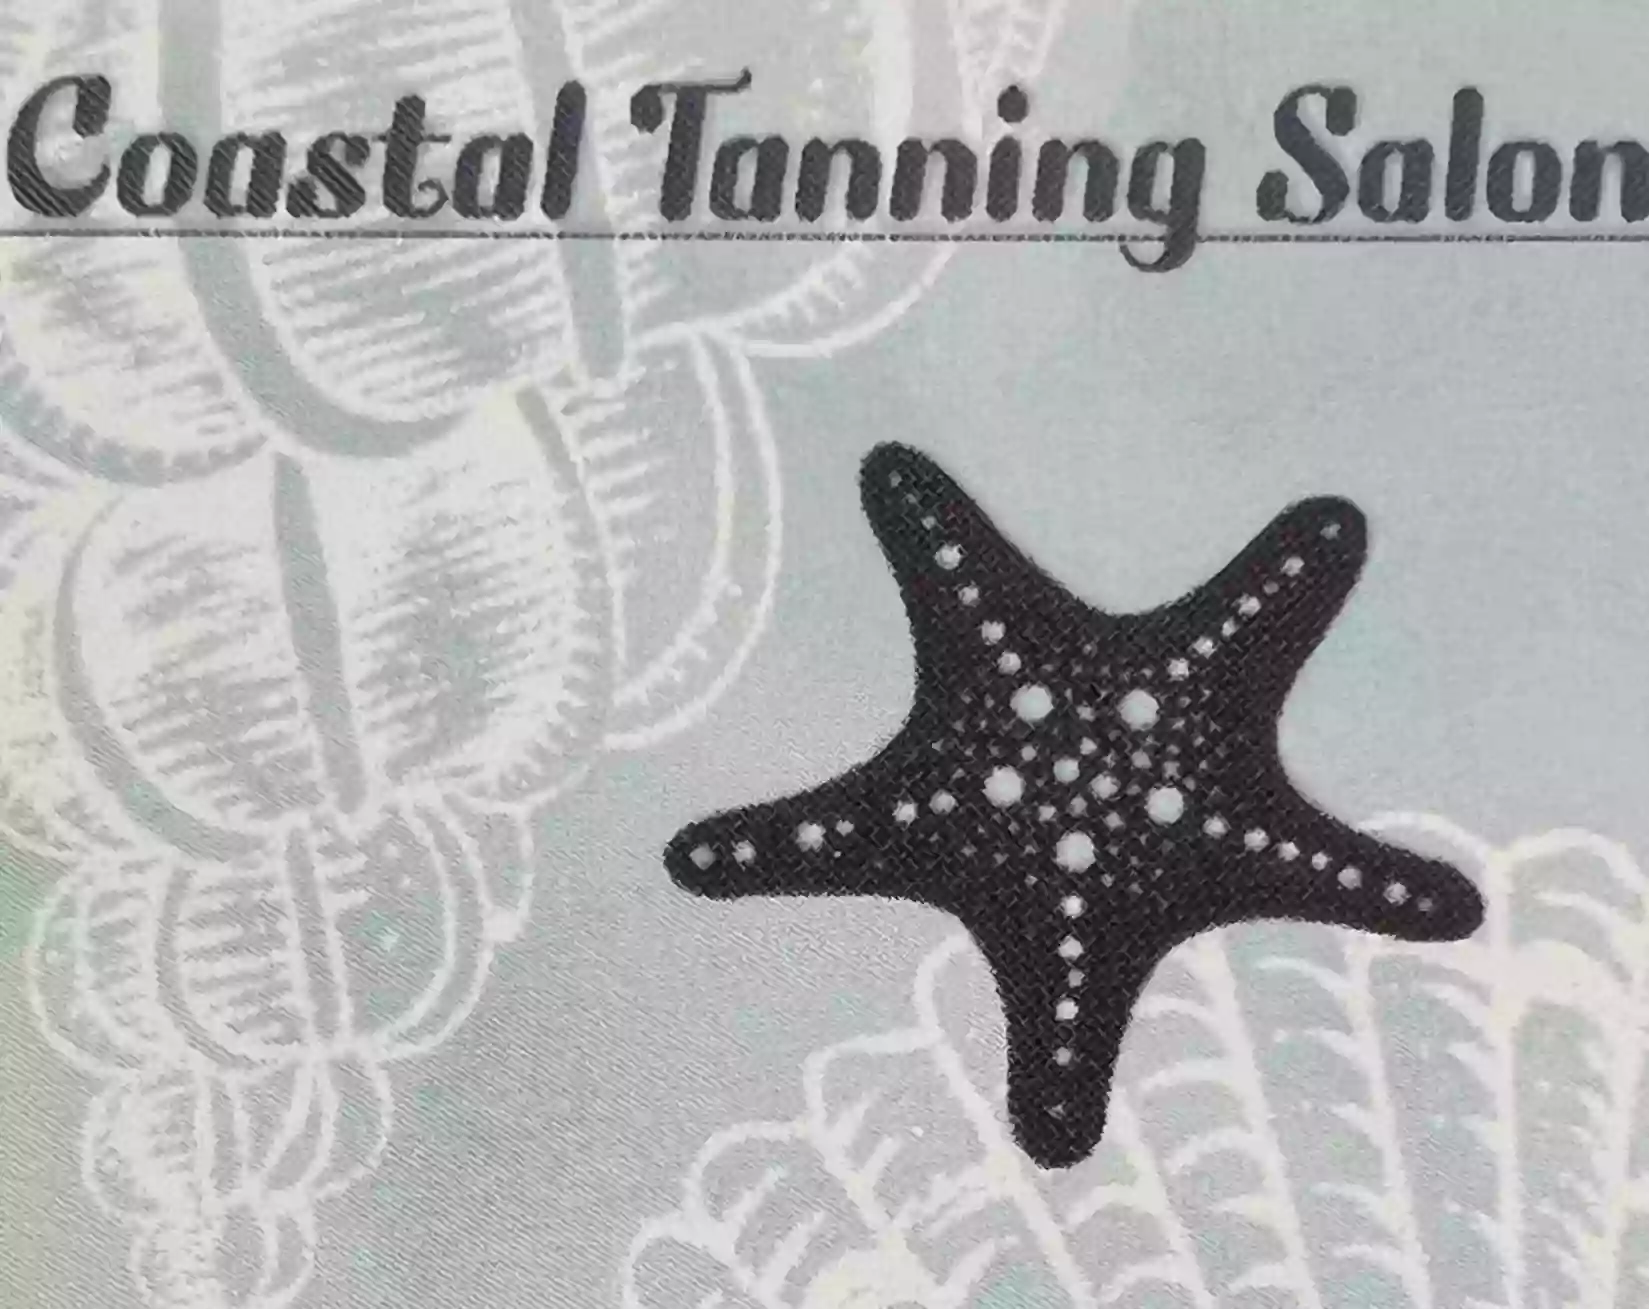 Coastal Tanning Salon